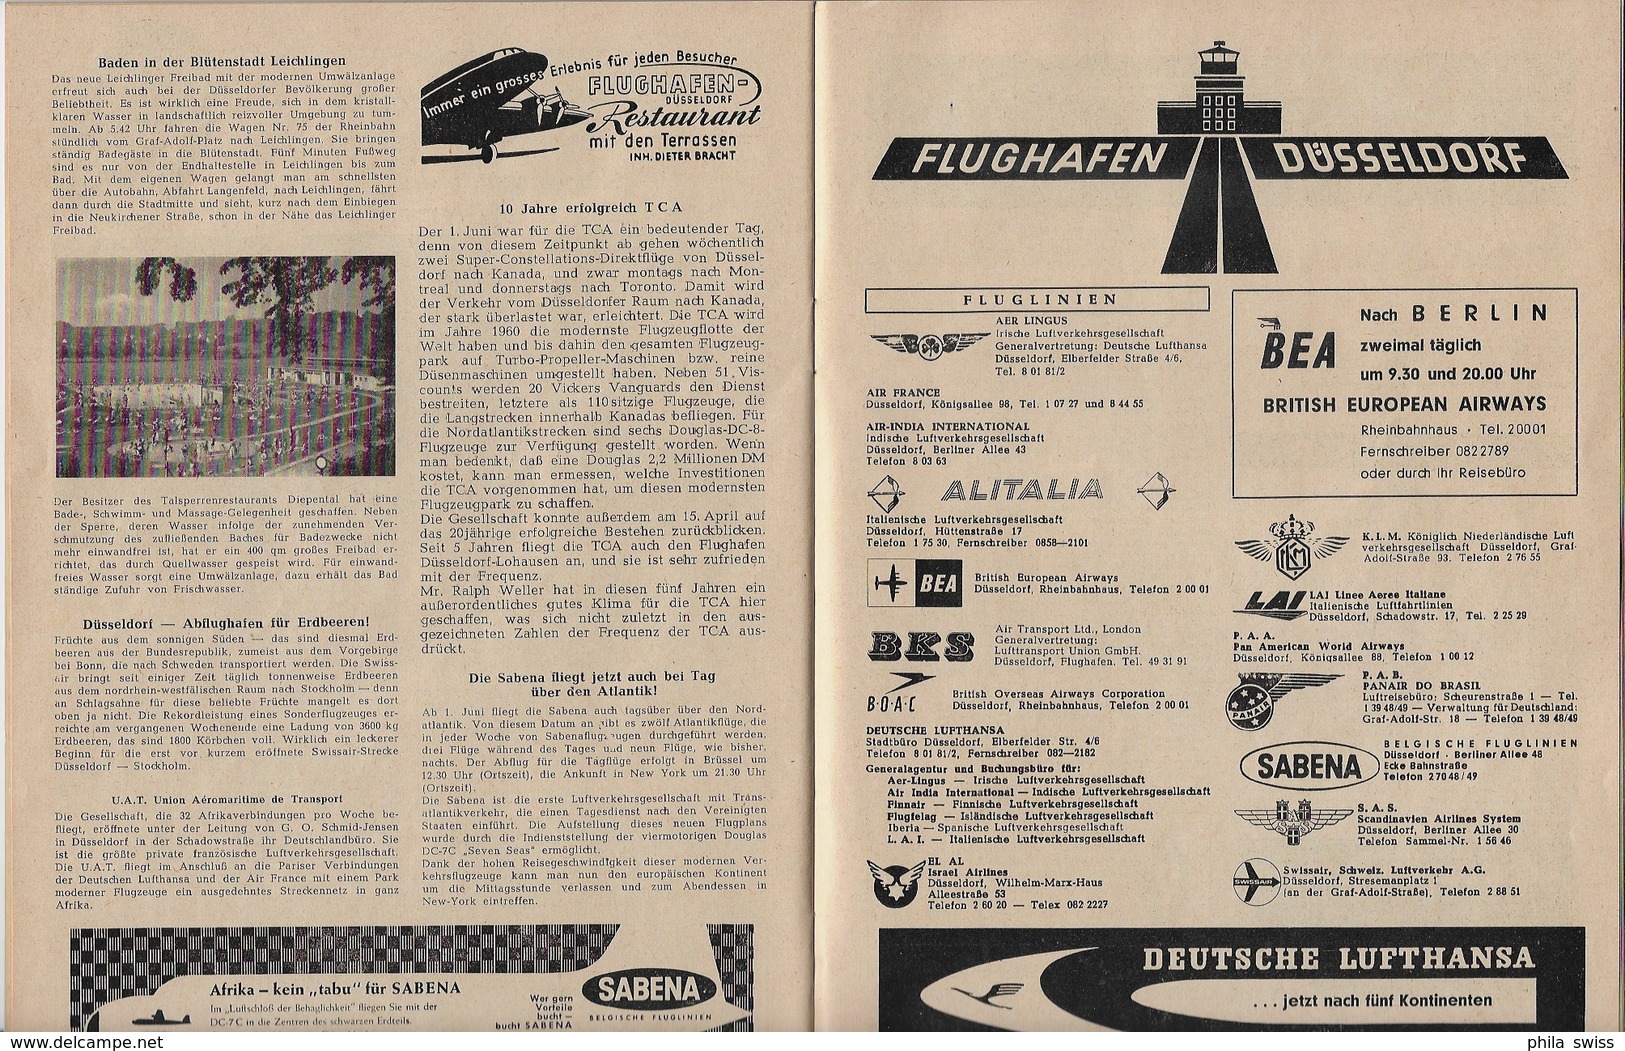 Deutschland BRD - Düsseldorfer Wochenspiegel No. 14 1957 - 52 Seiten - Travel & Entertainment